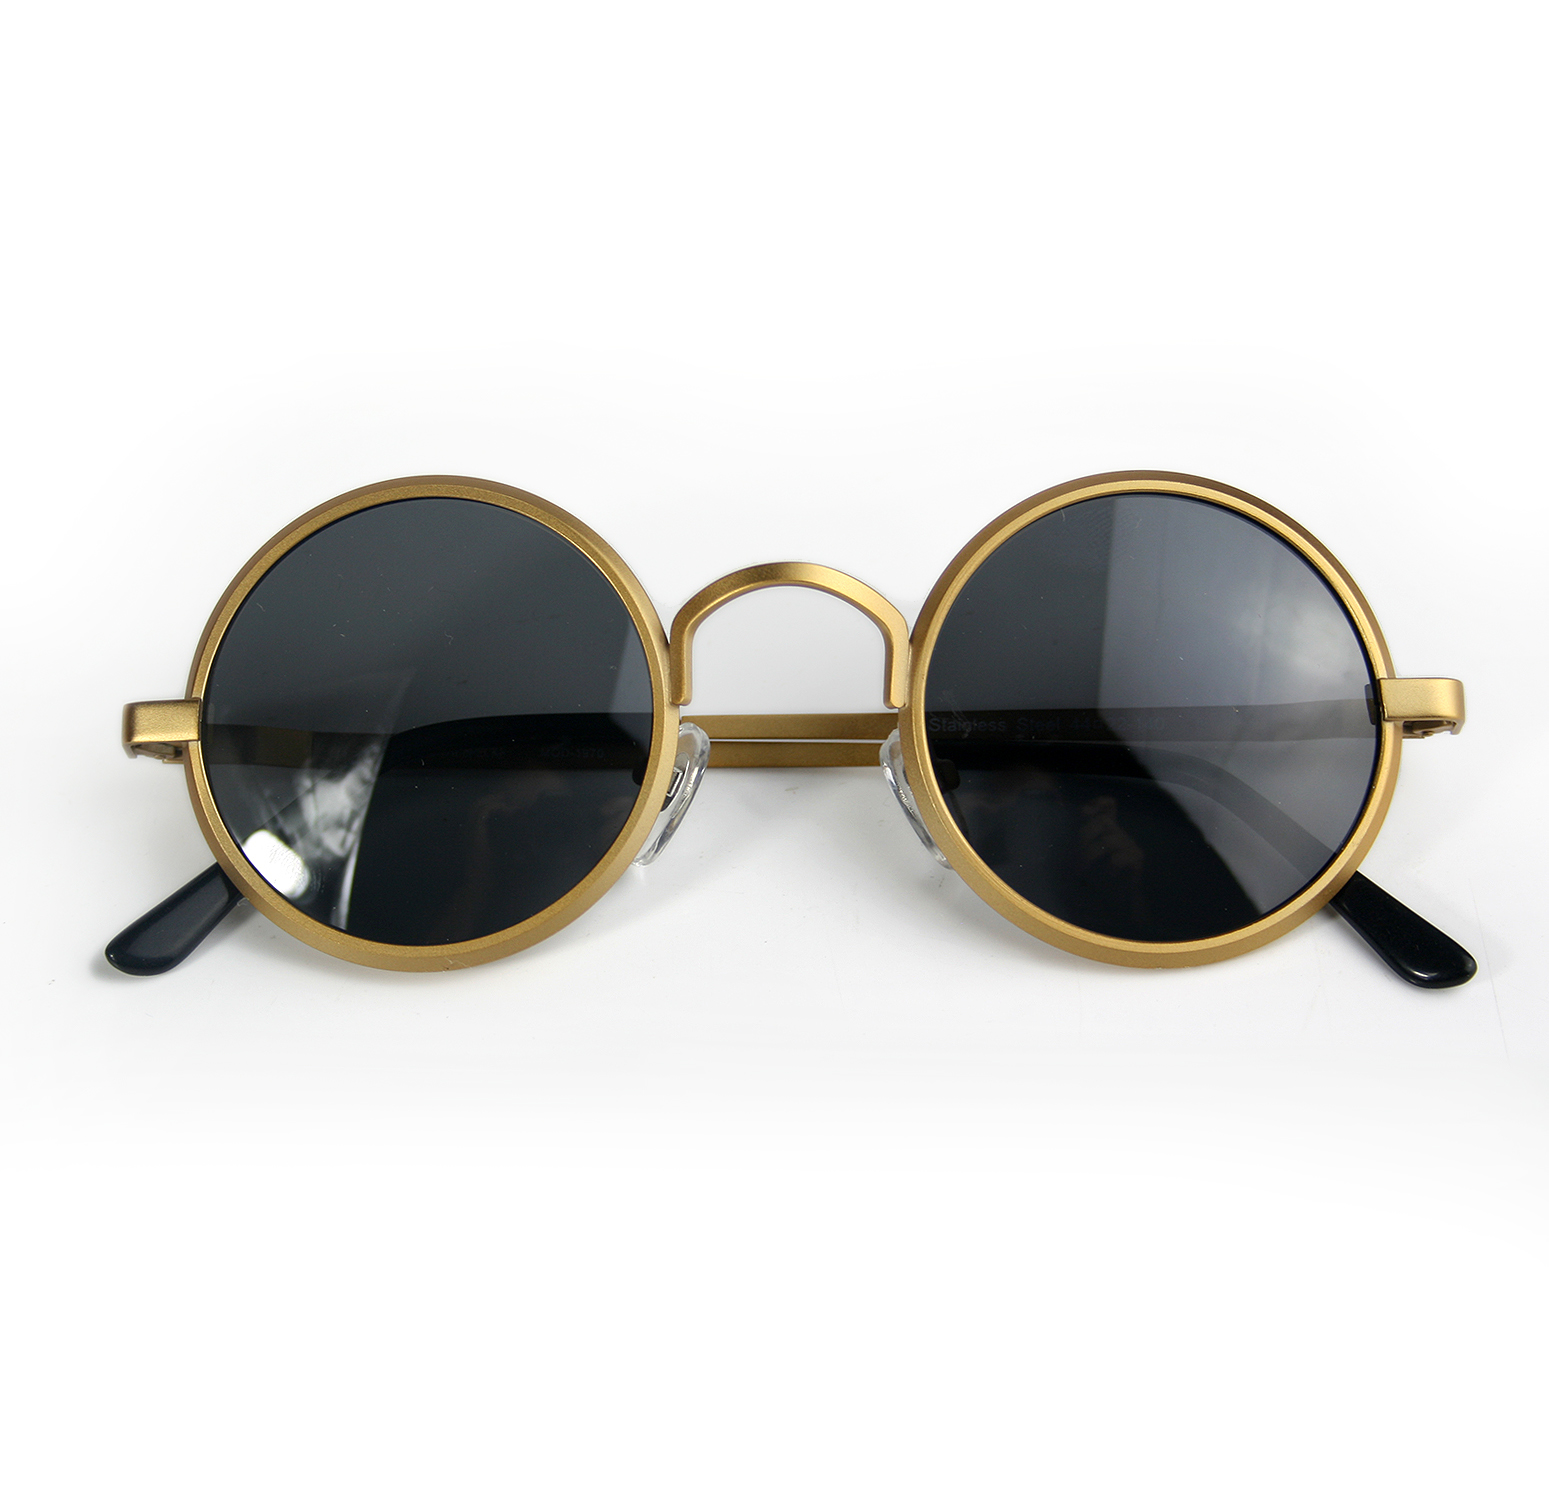 John Lennon Sunglasses Sell For $183,000 At Auction